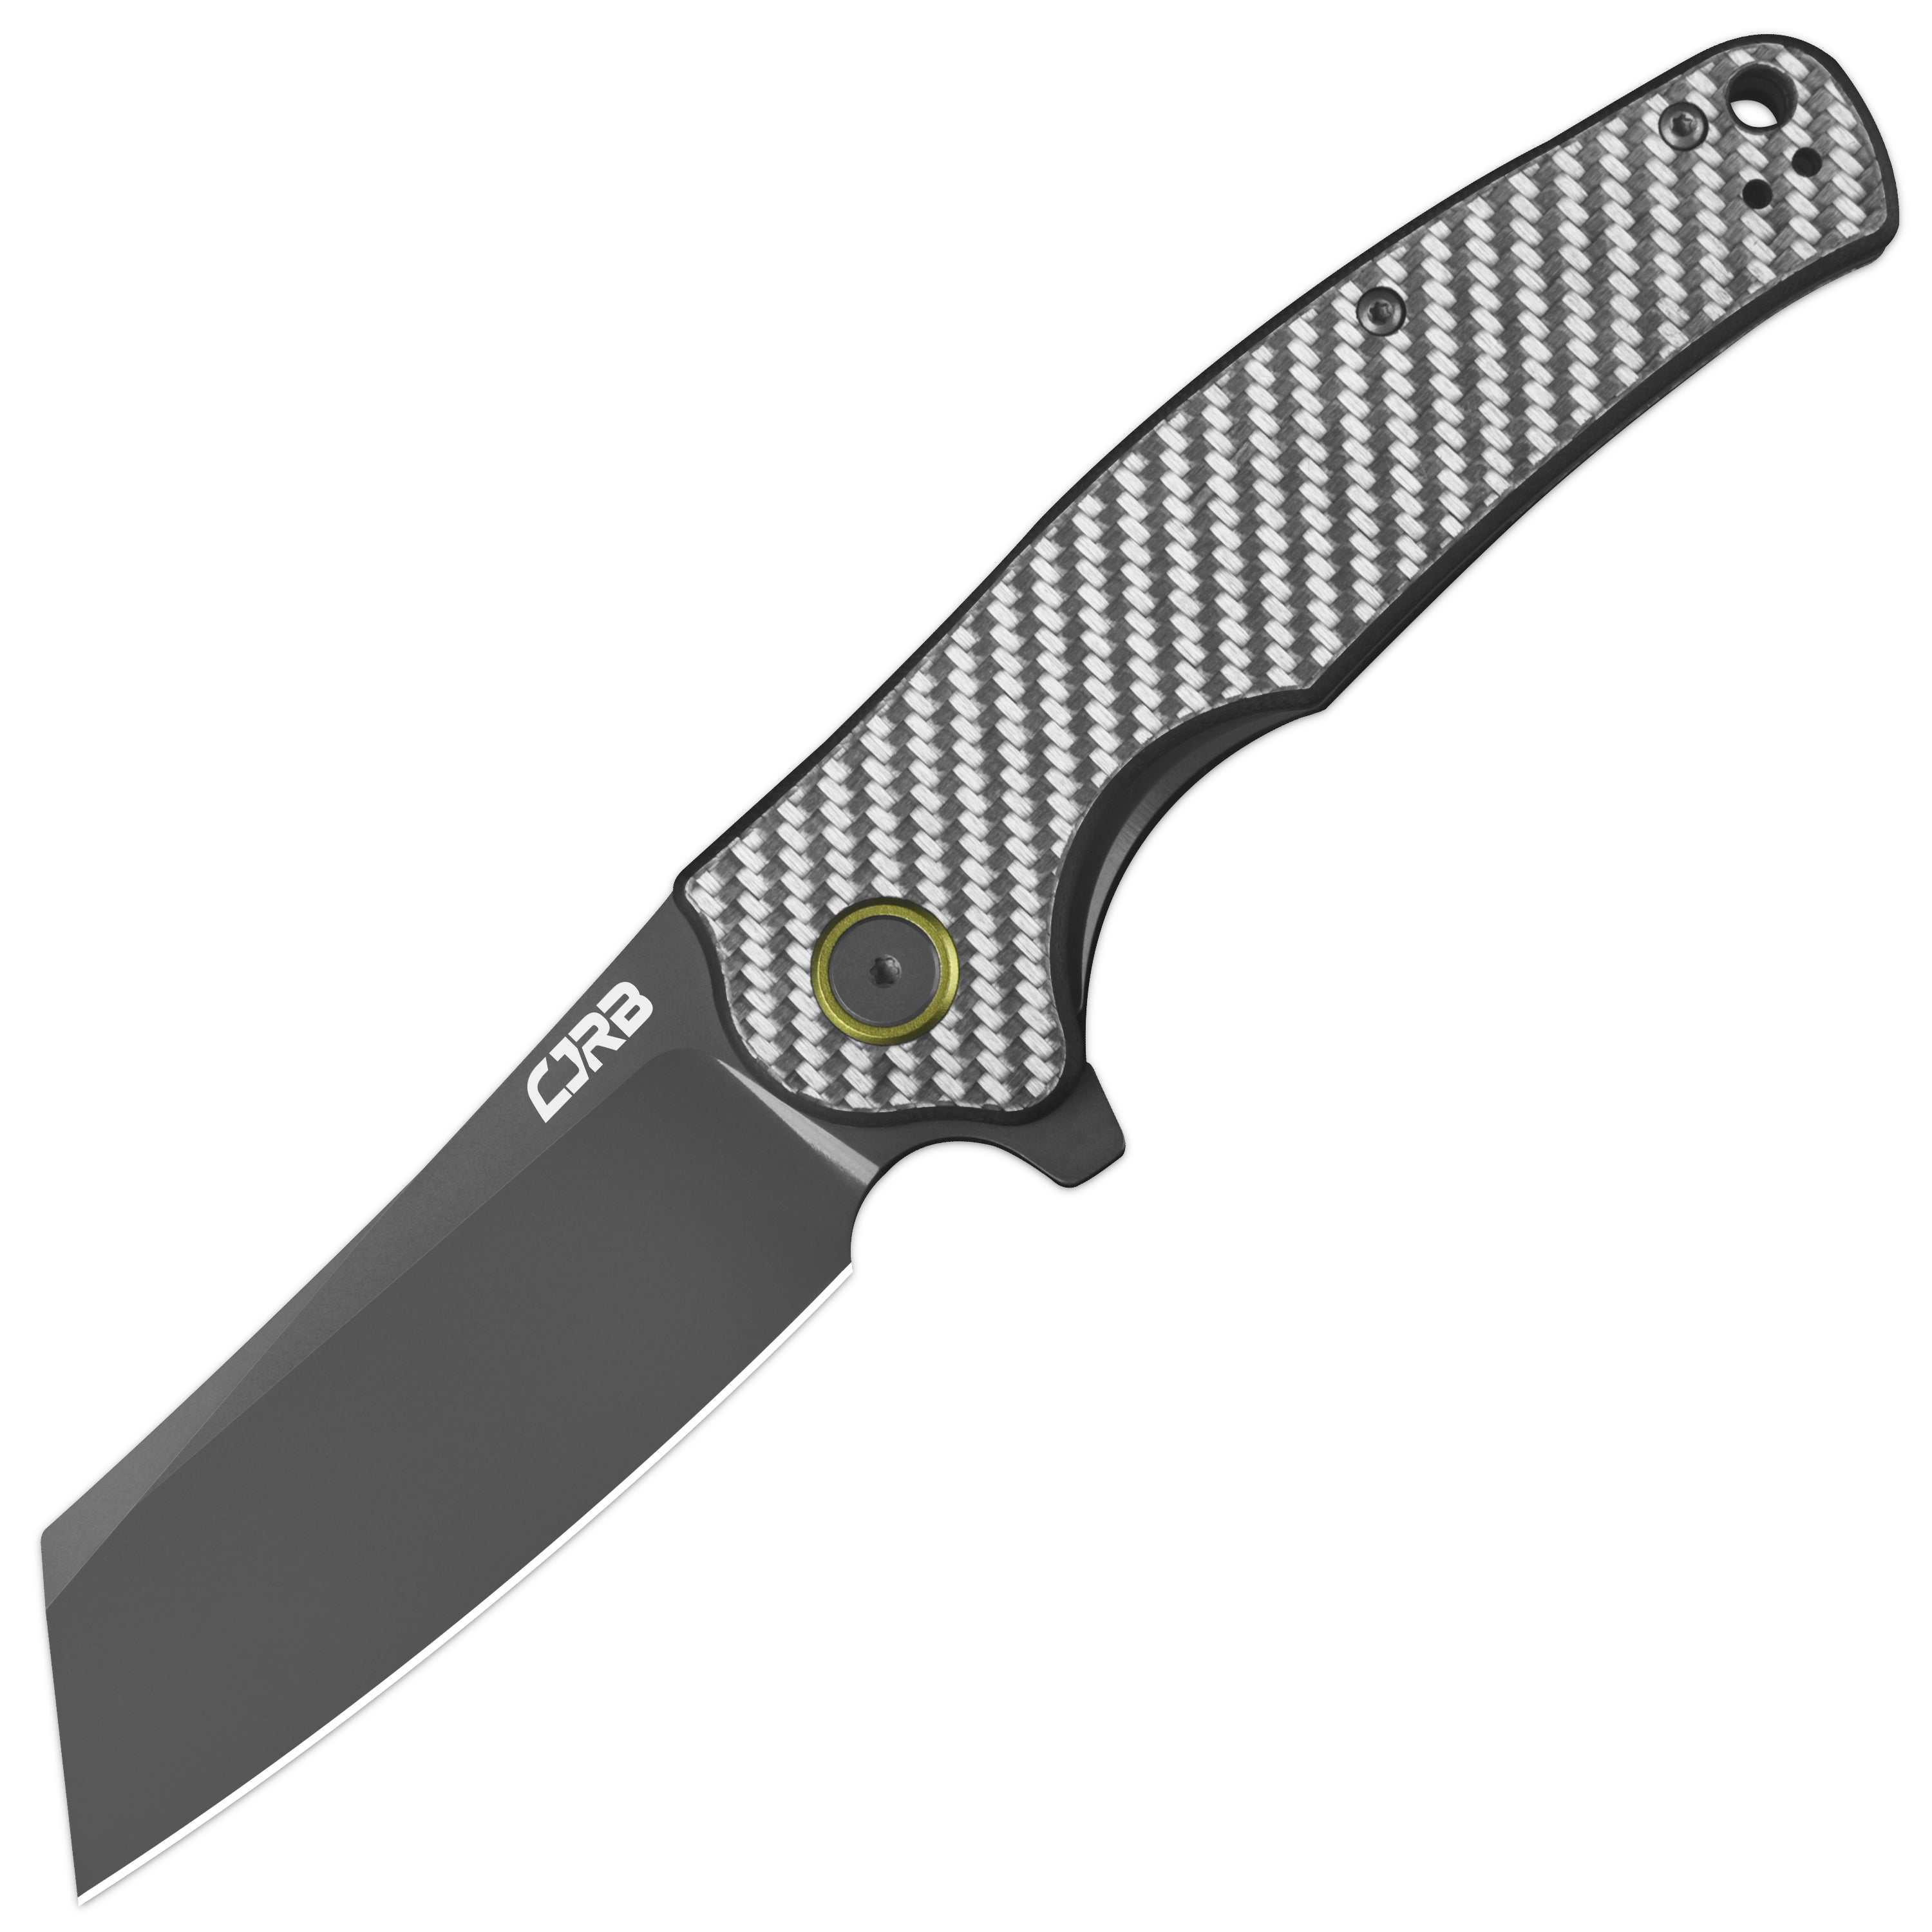 CJRB Crag J1904 AR-RPM9 Steel Gray Pvd Blade Sliver Carbon Fiber Handle Folding Knives